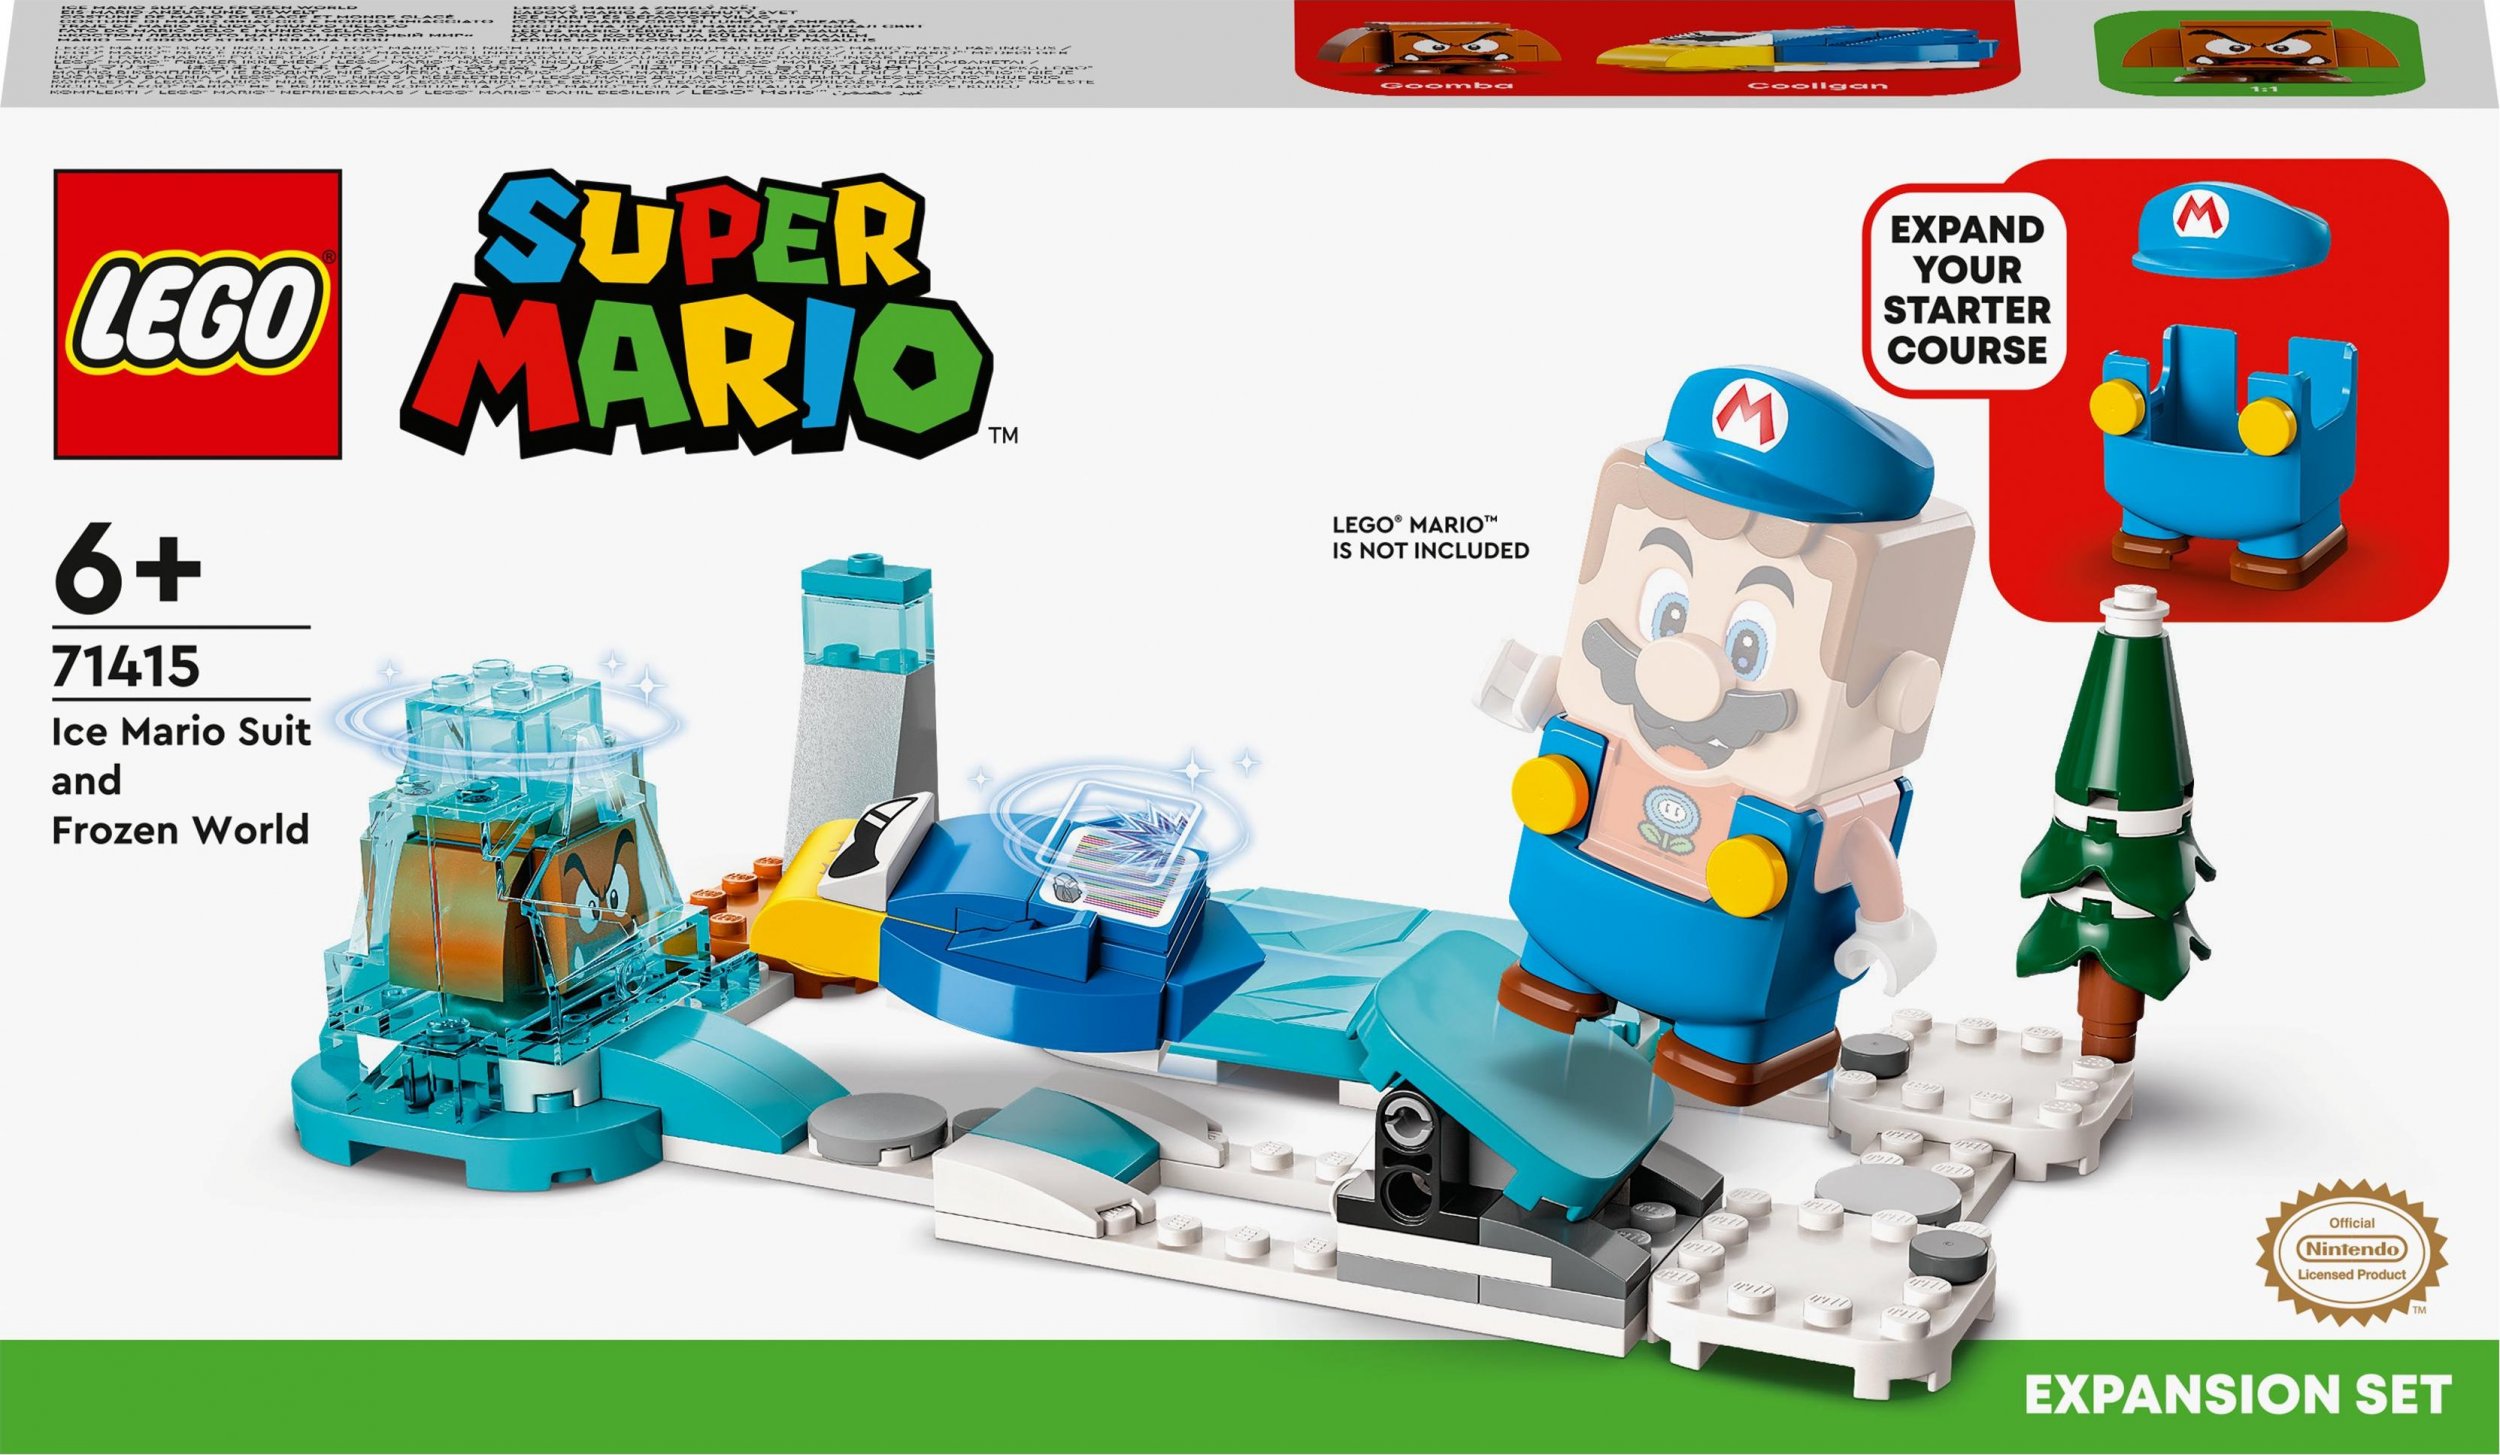 LEGO Super Mario Mario - lodowy stroj i kraina lodu - zestaw rozszerzajacy (71415) LEGO konstruktors